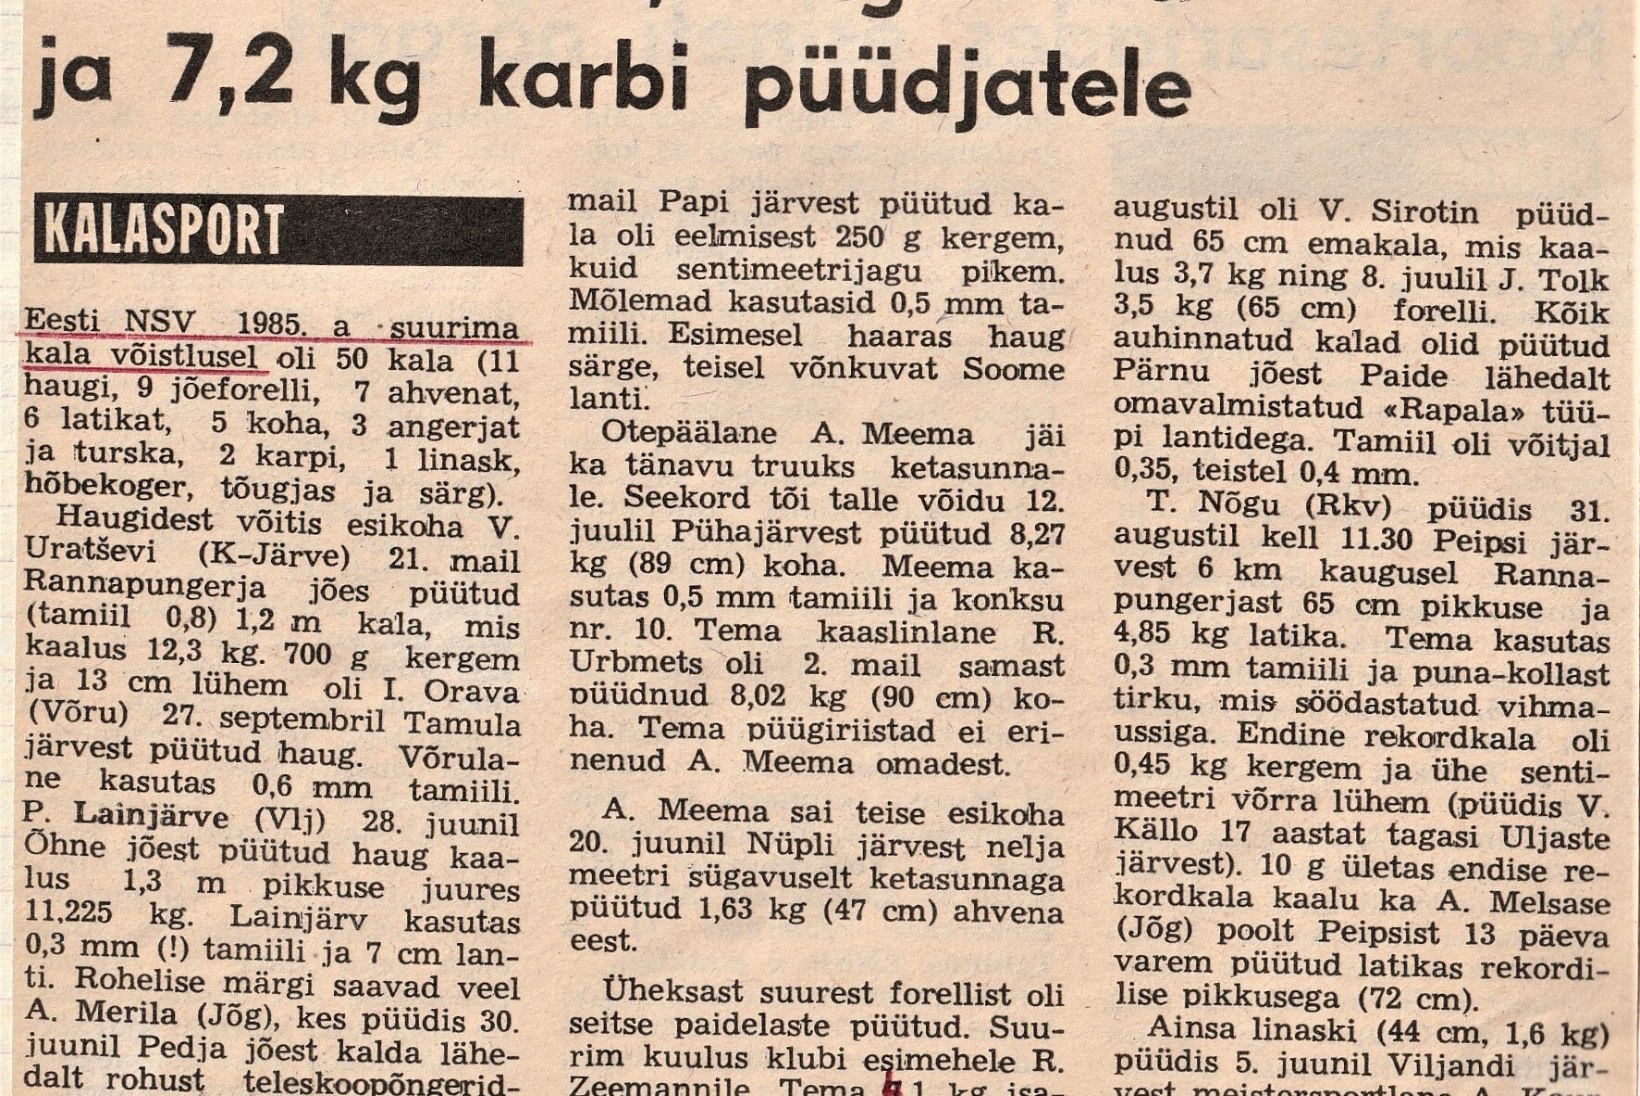 Veterankalamees Katenevi päevikud 1985-1986: tööd palju, kalale enam nii tihti ei pääse